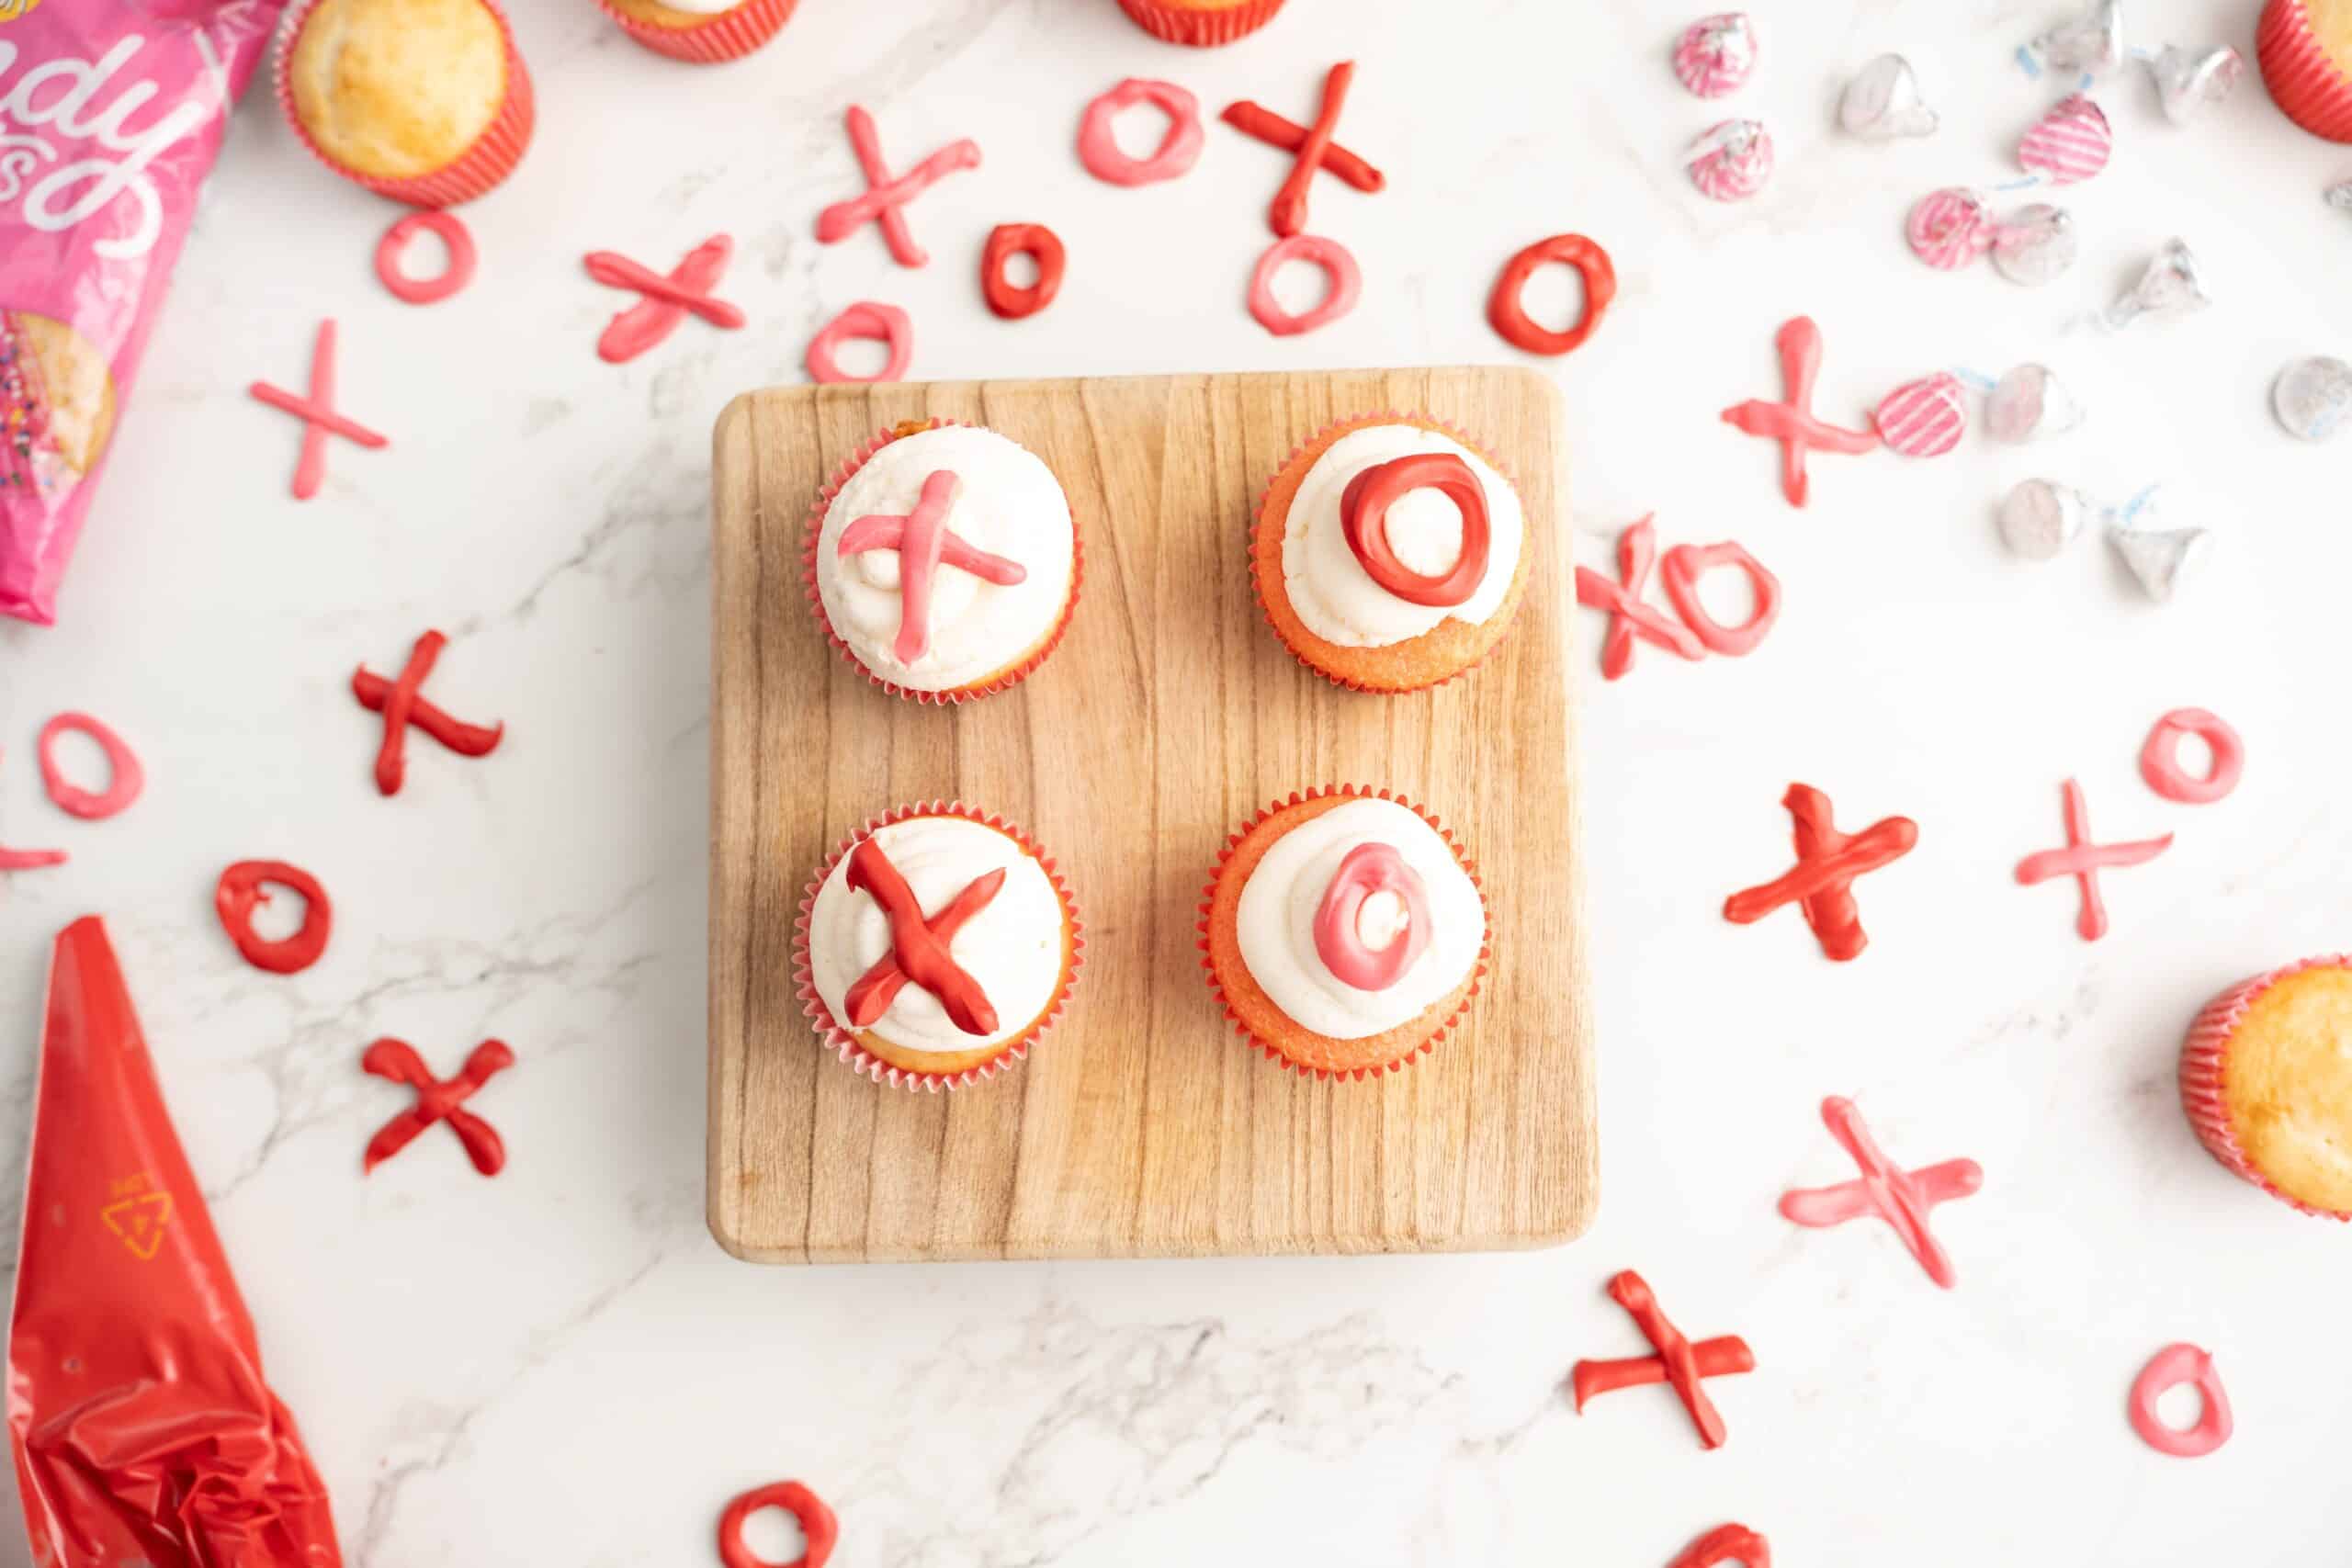 XOXO cupcakes